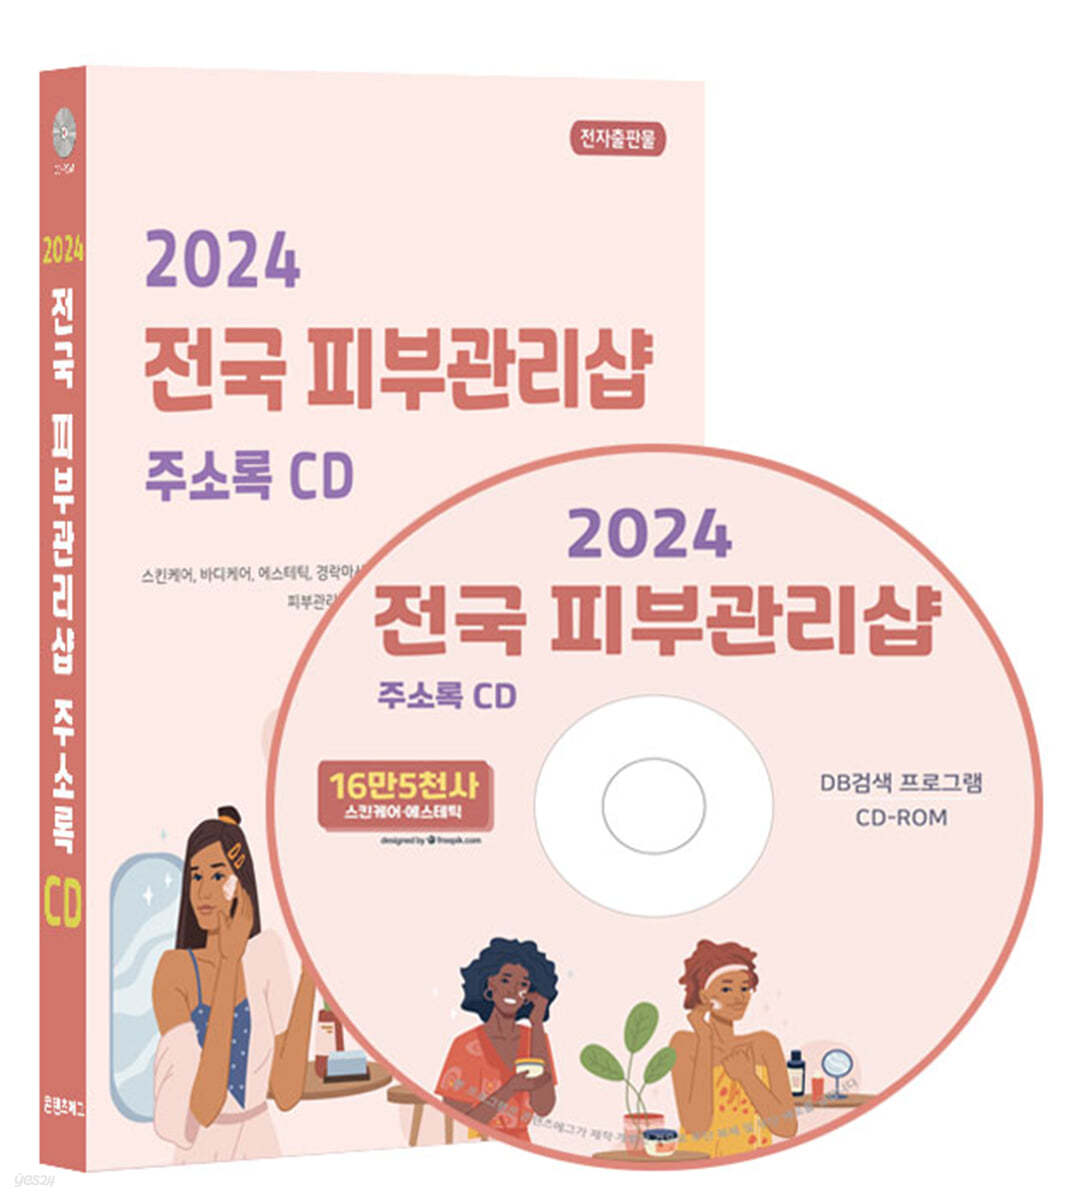 2024 전국 피부관리샵 주소록 CD